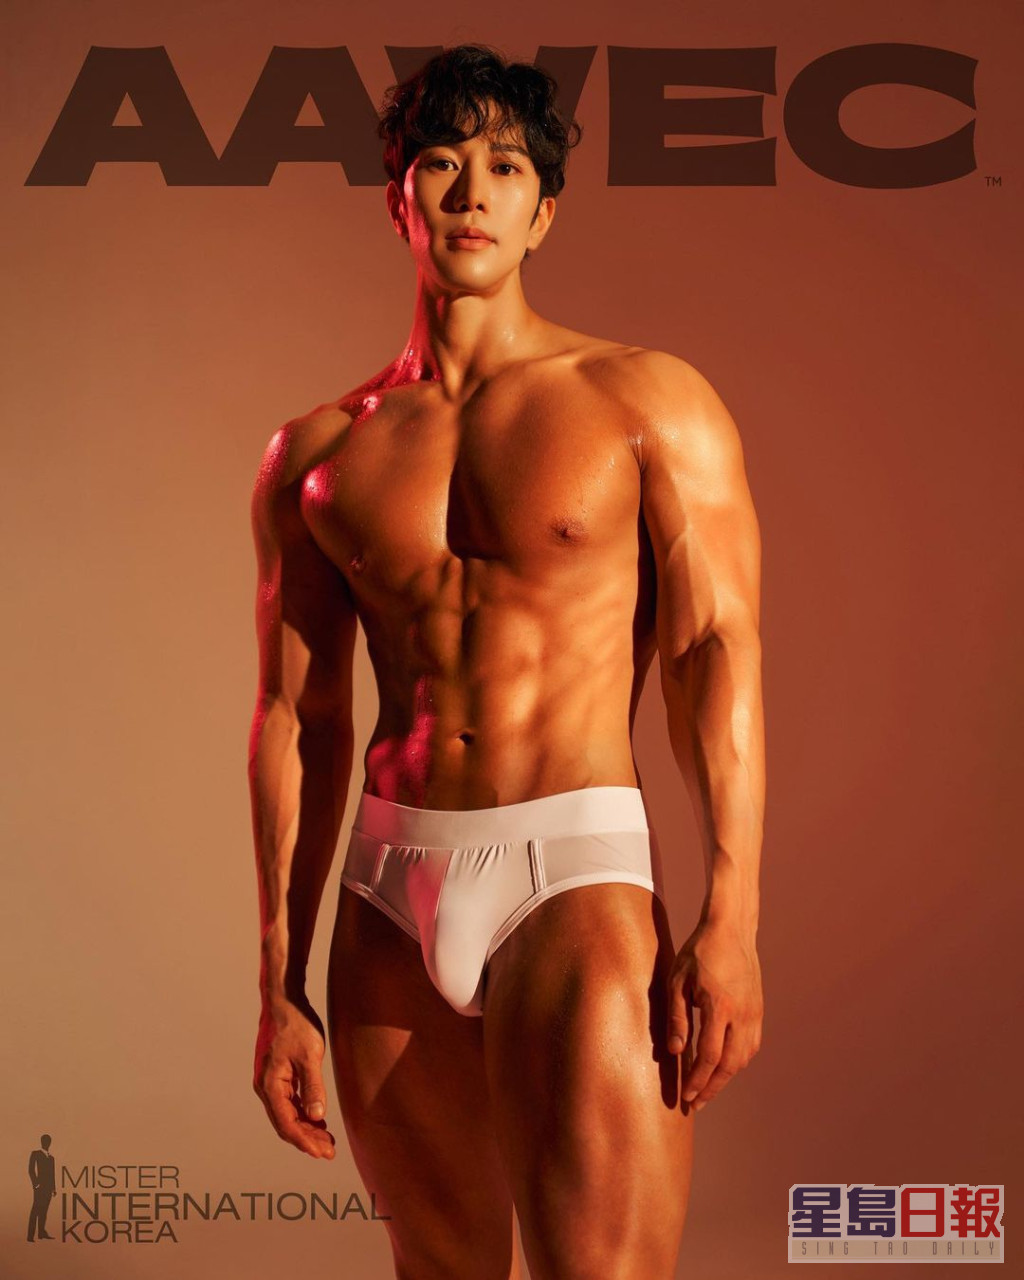 2號 김태훈 (Kim Taehun)  年齡：31  身高：177cm  體重：72kg  職業：市場營銷專家